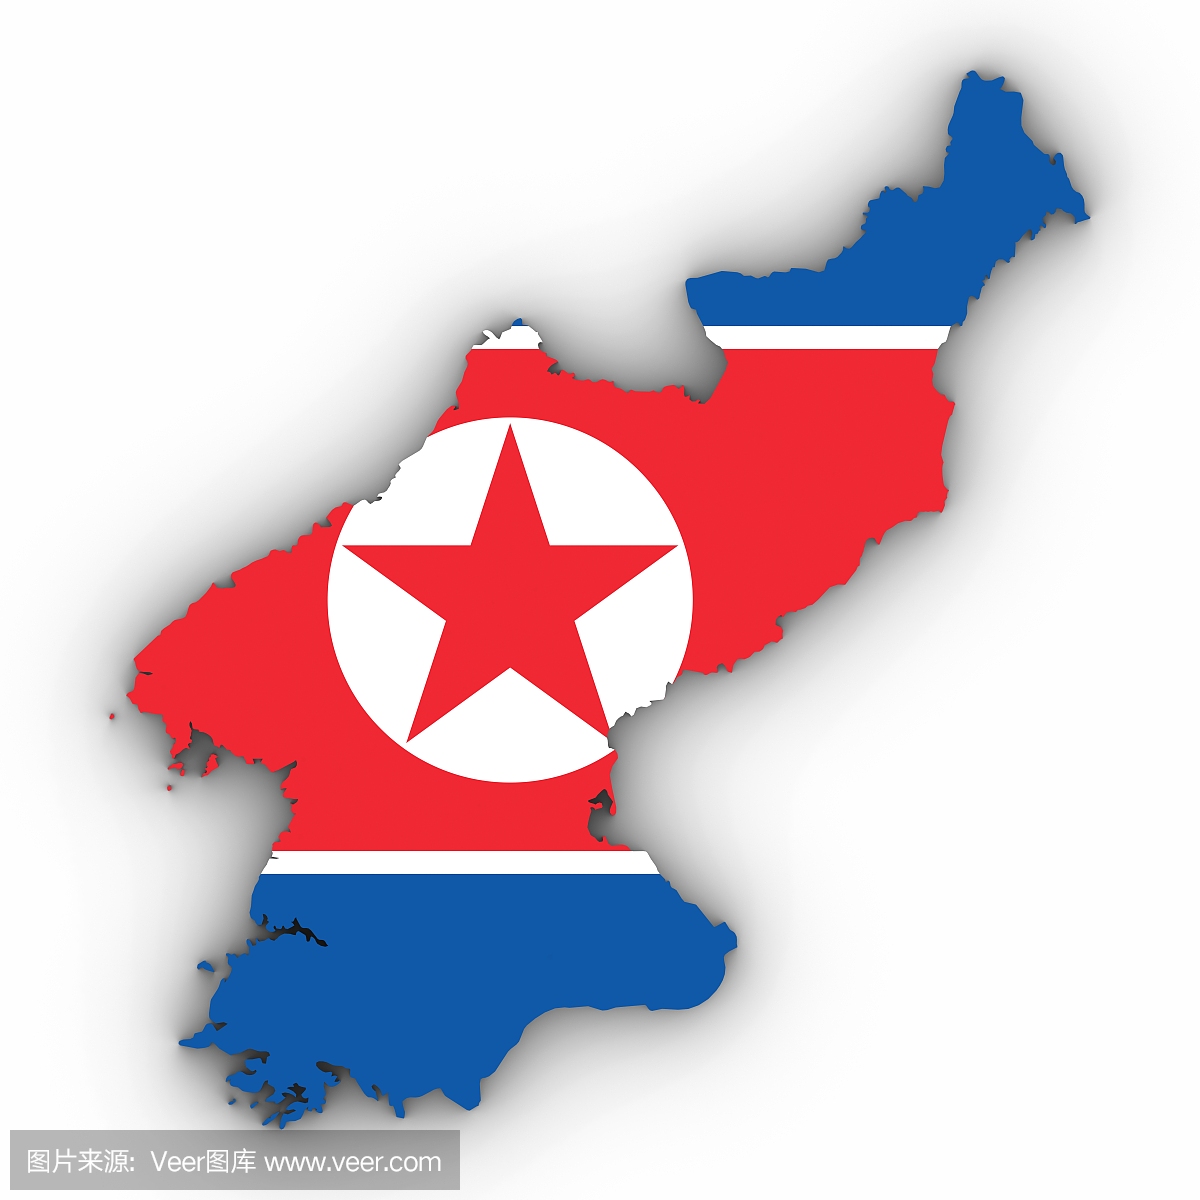 朝鲜首都平壤的库存照片照片摄影图片_ID:374451627-Veer图库